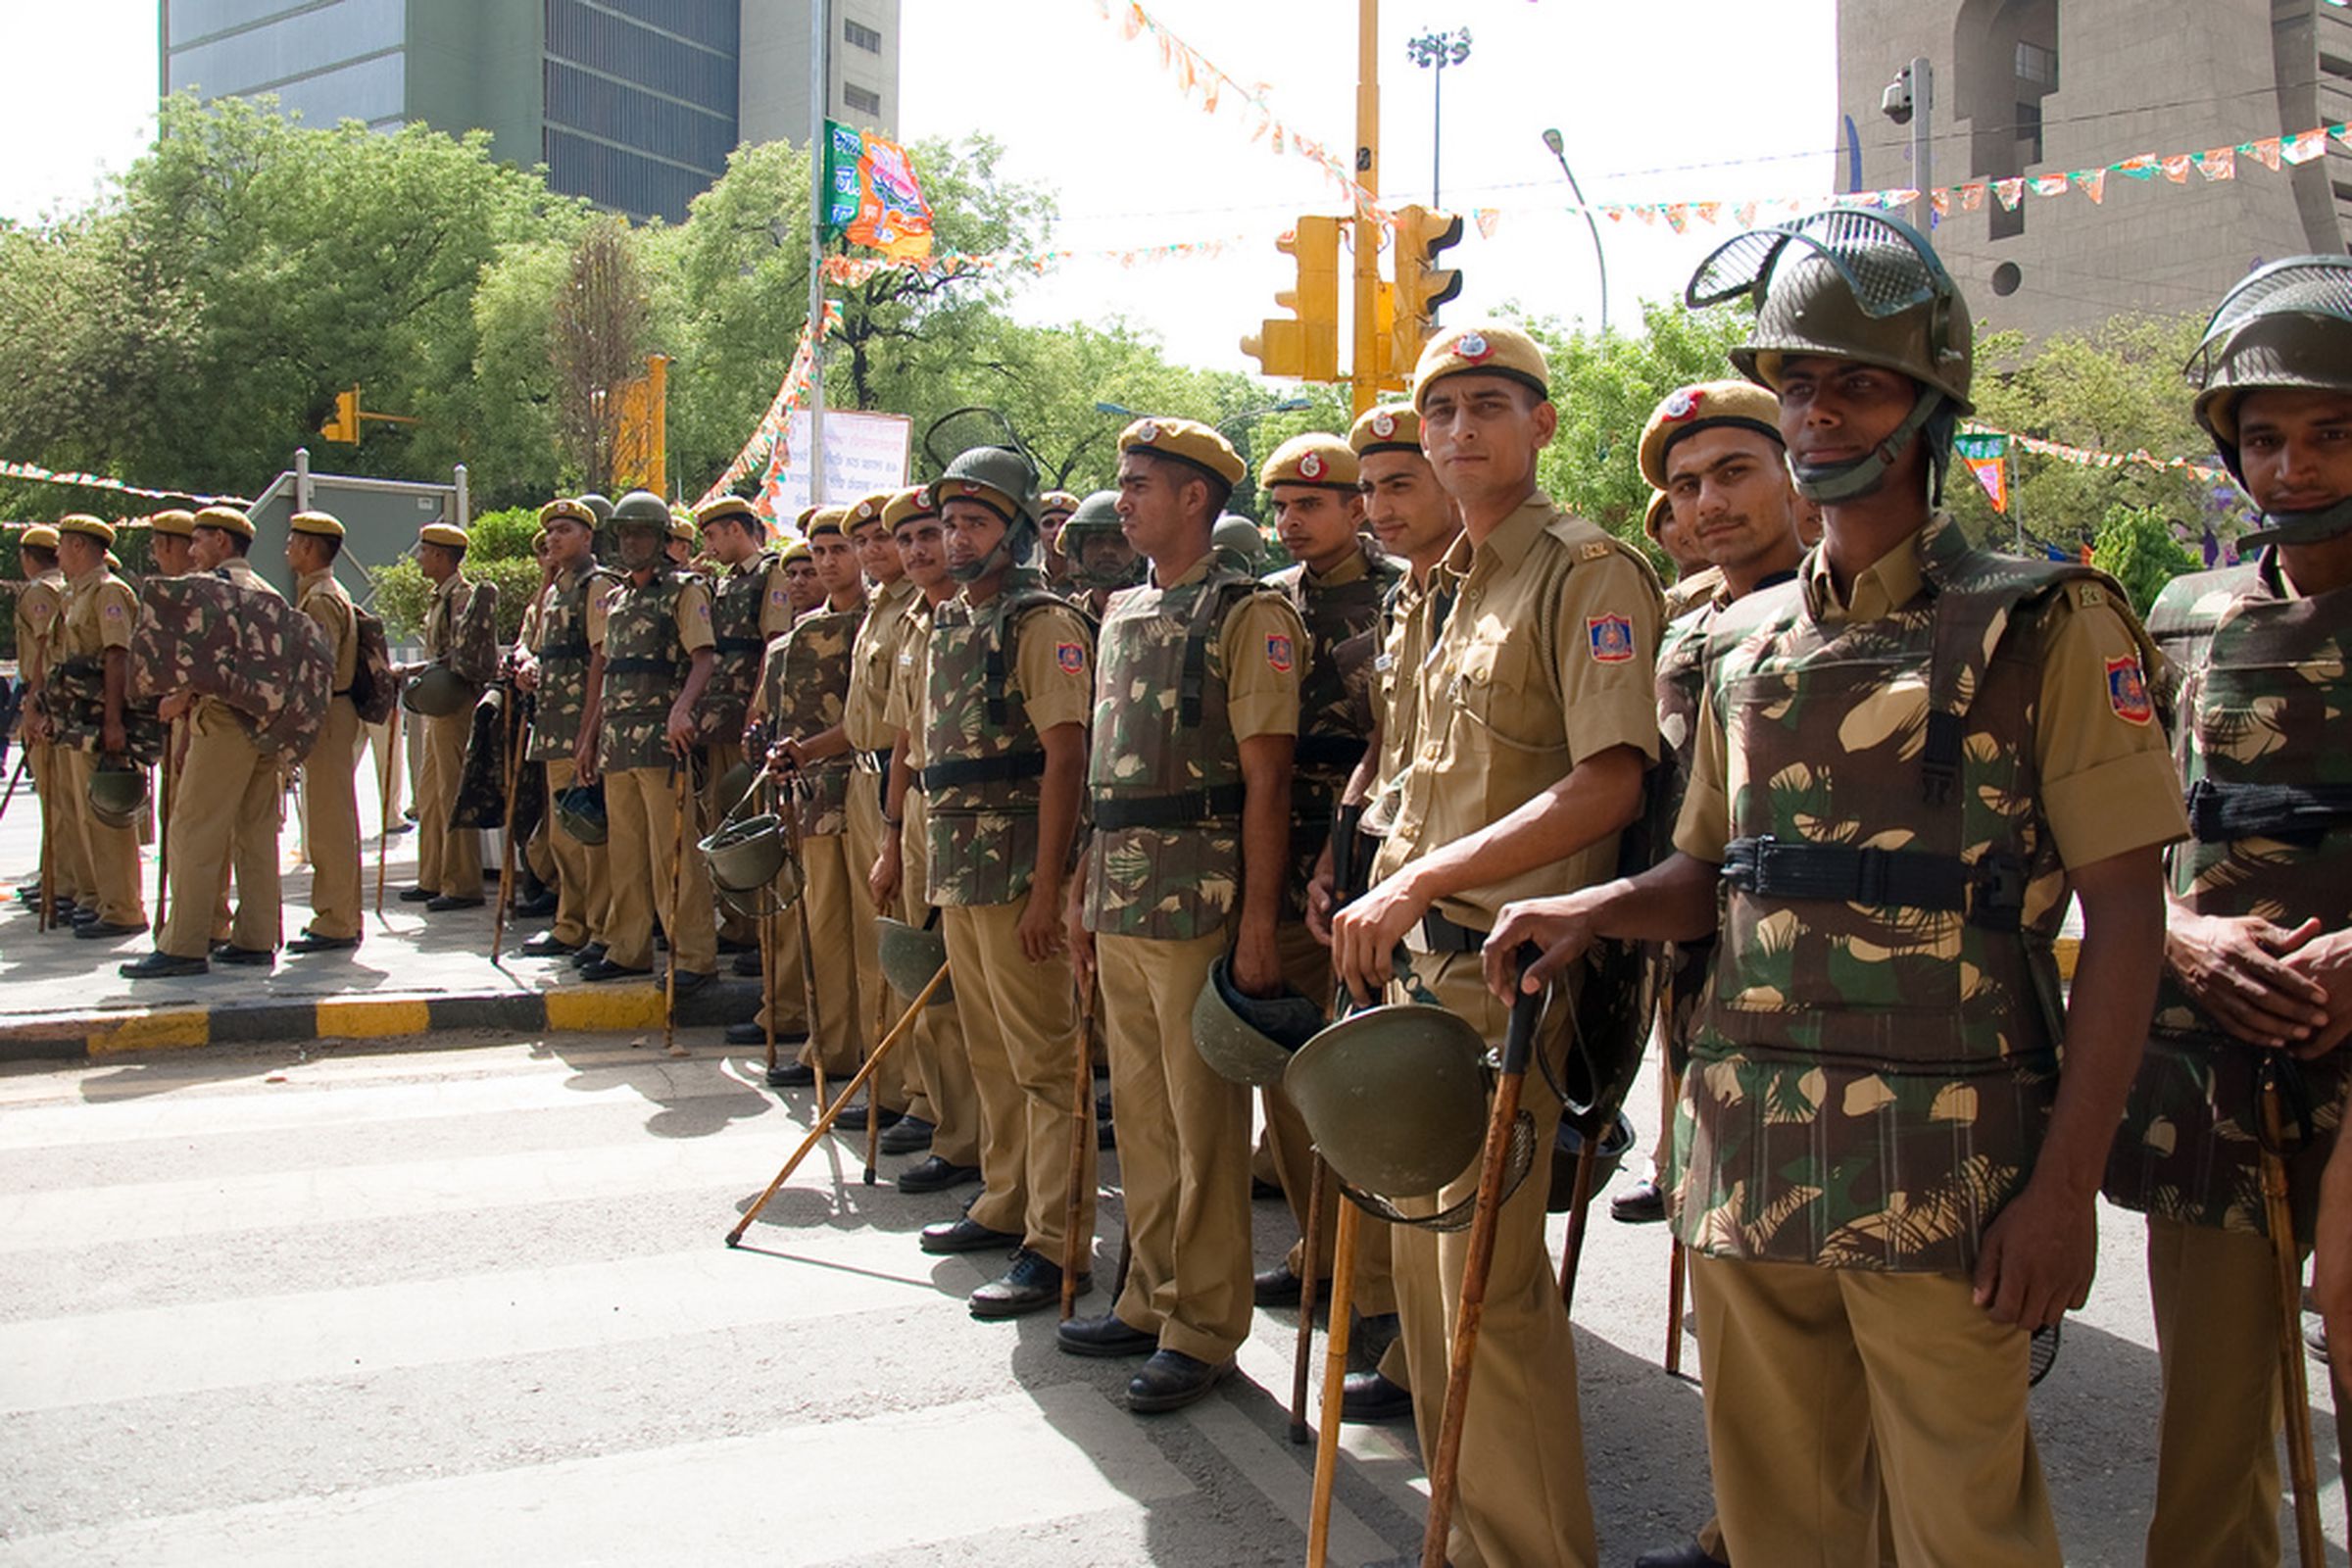 india police (jaskirat singh bawa flickr)